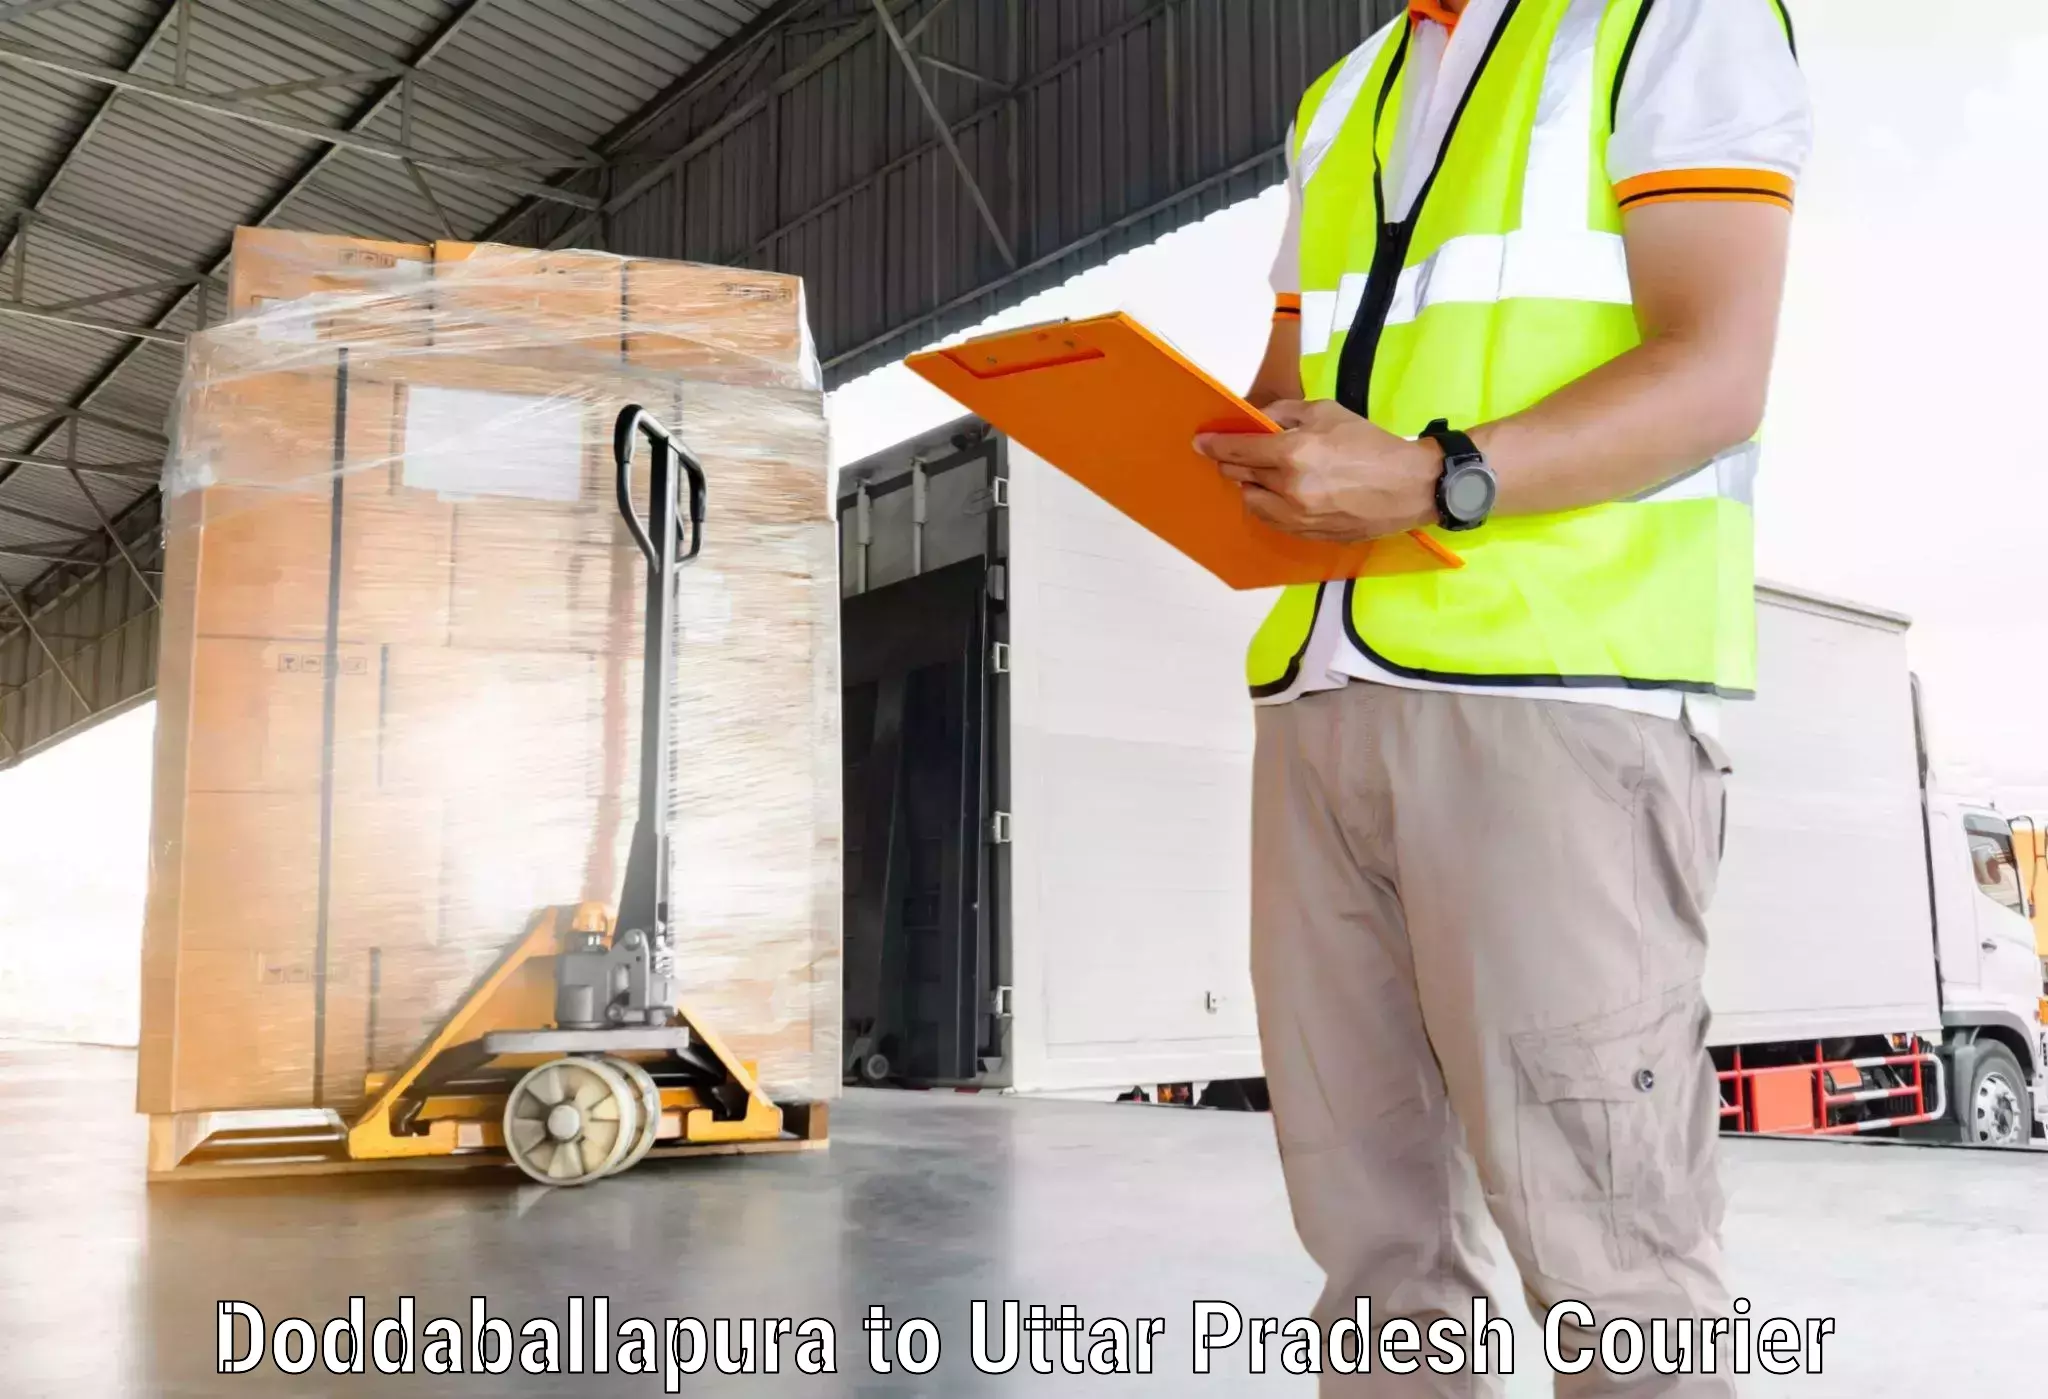 Door-to-door freight service Doddaballapura to Khutar